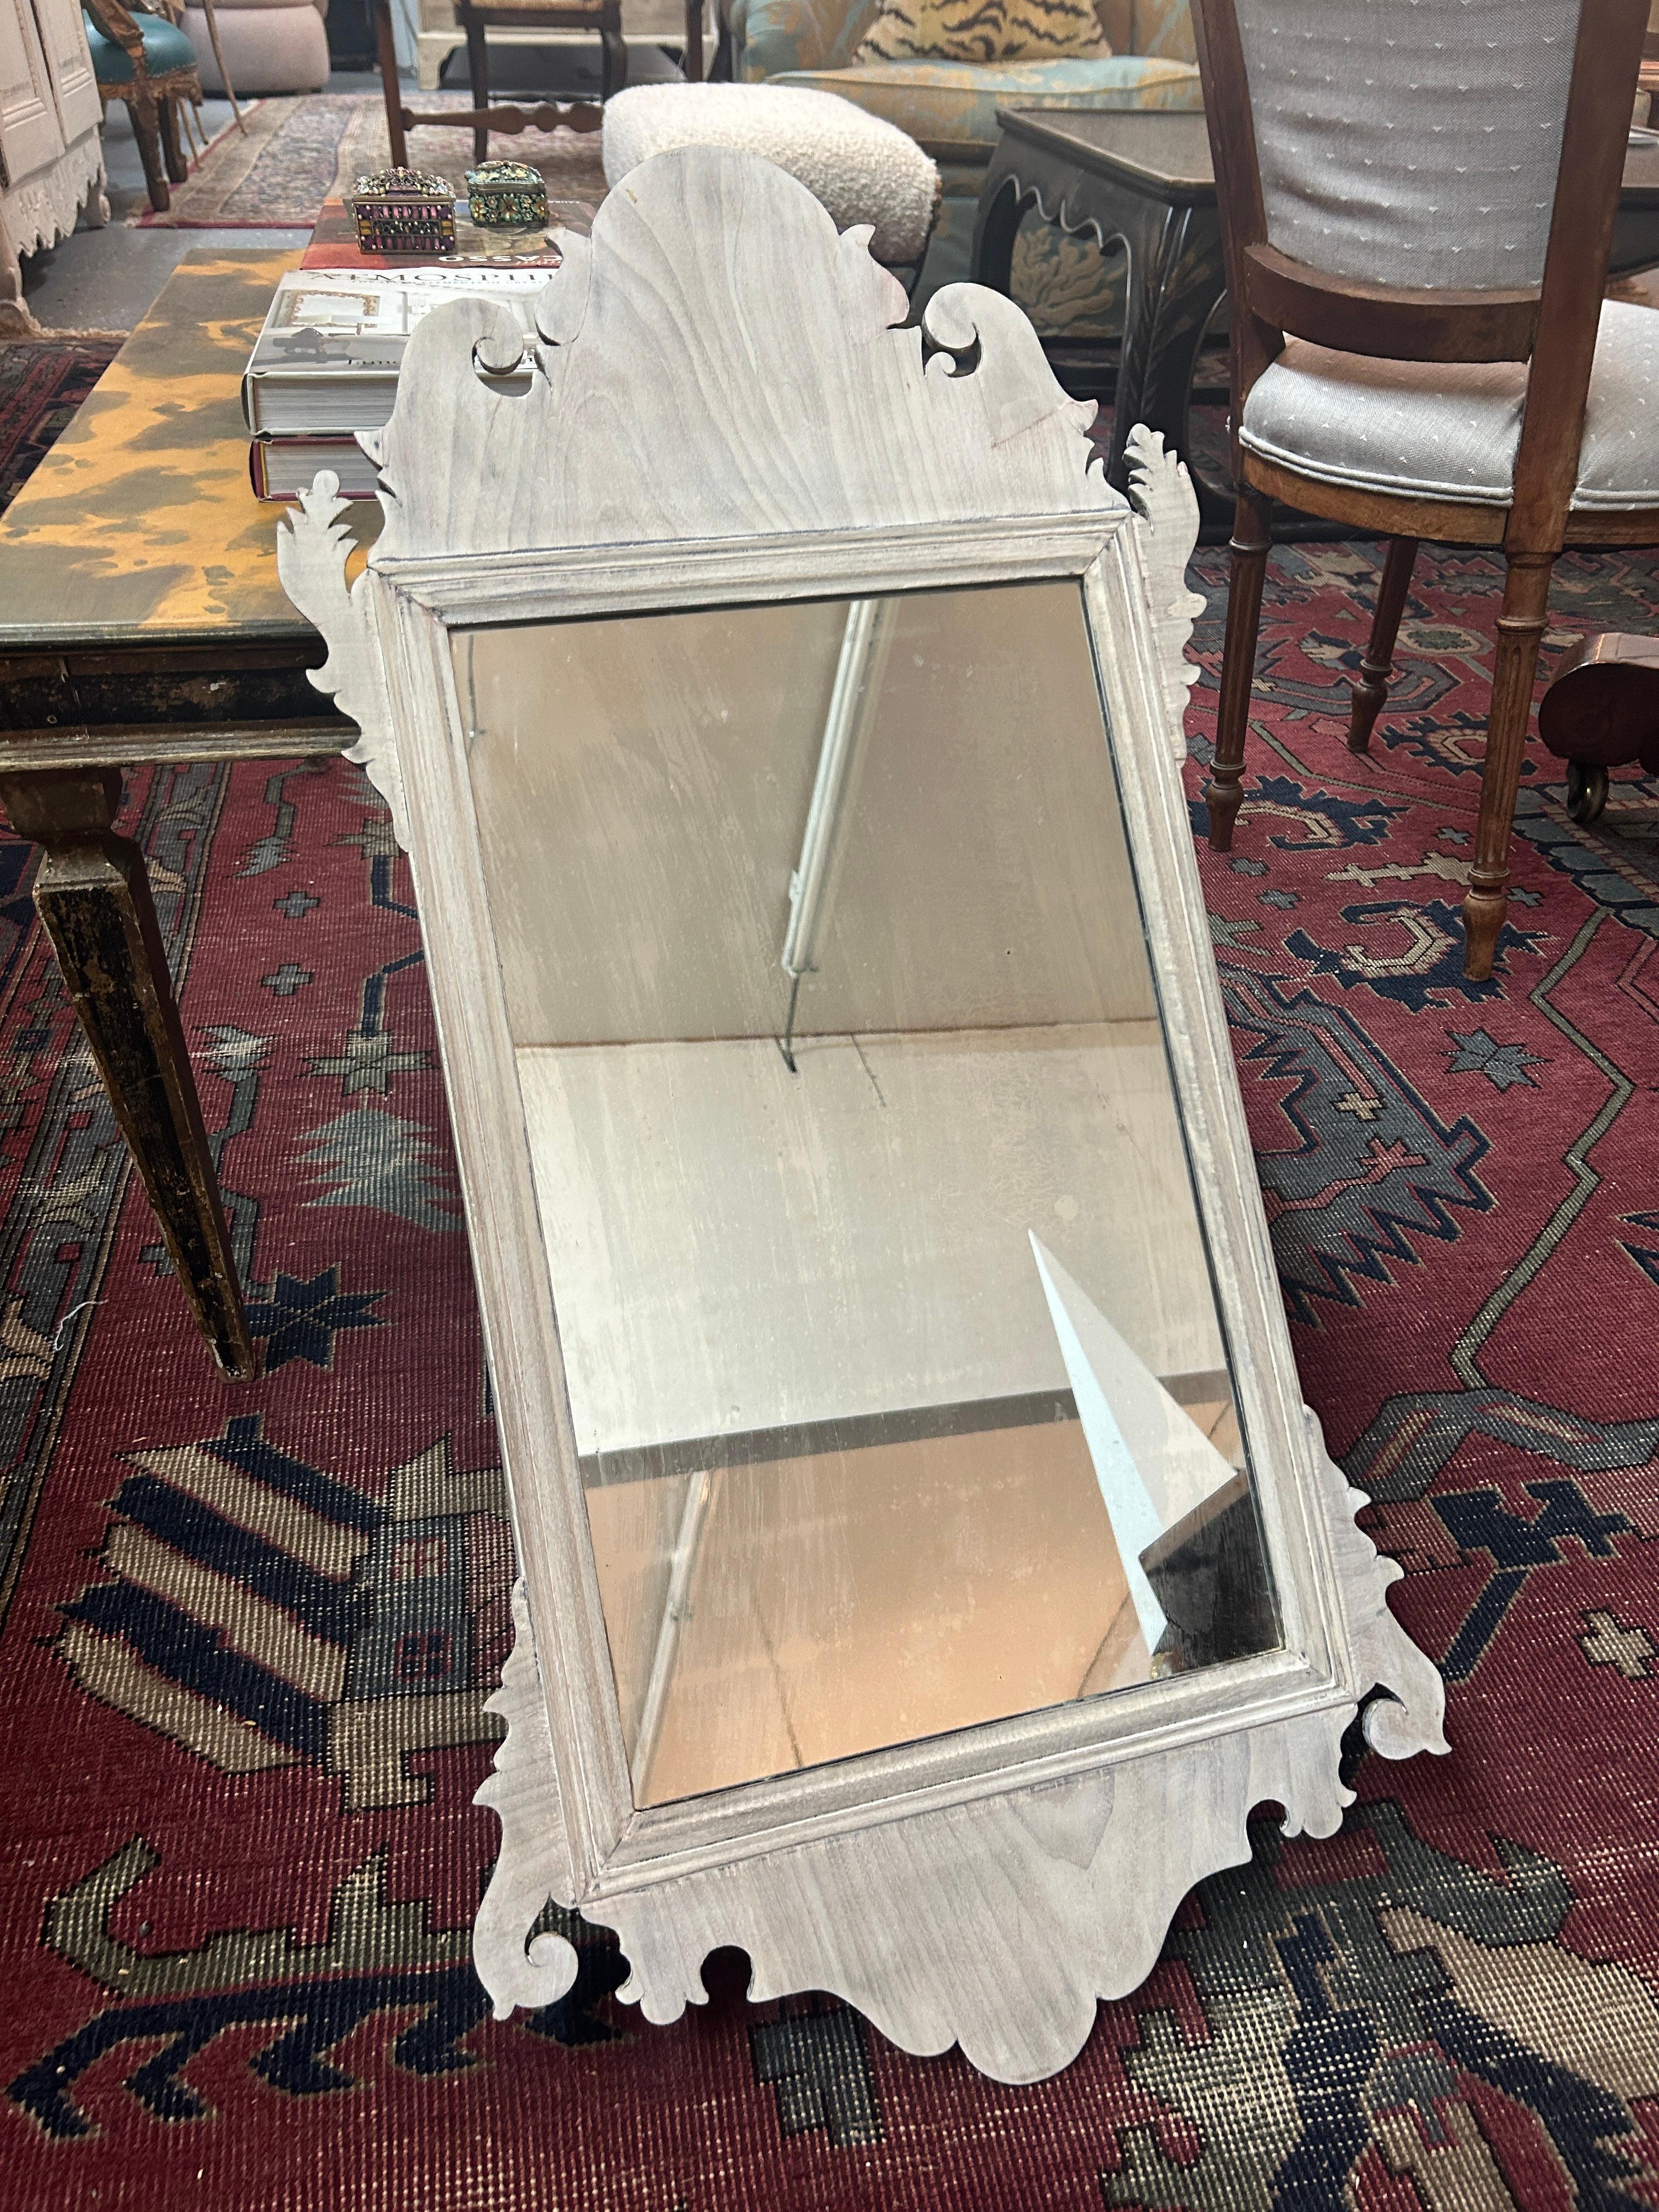 Rehaussez l'élégance de votre maison ou de celle de vos clients avec cet exquis miroir Feder du XVIIIe siècle, fabriqué dans le style intemporel de Chippendale. Fabriqué en acajou blanchi lustré, ce miroir respire la sophistication et le charme. Son